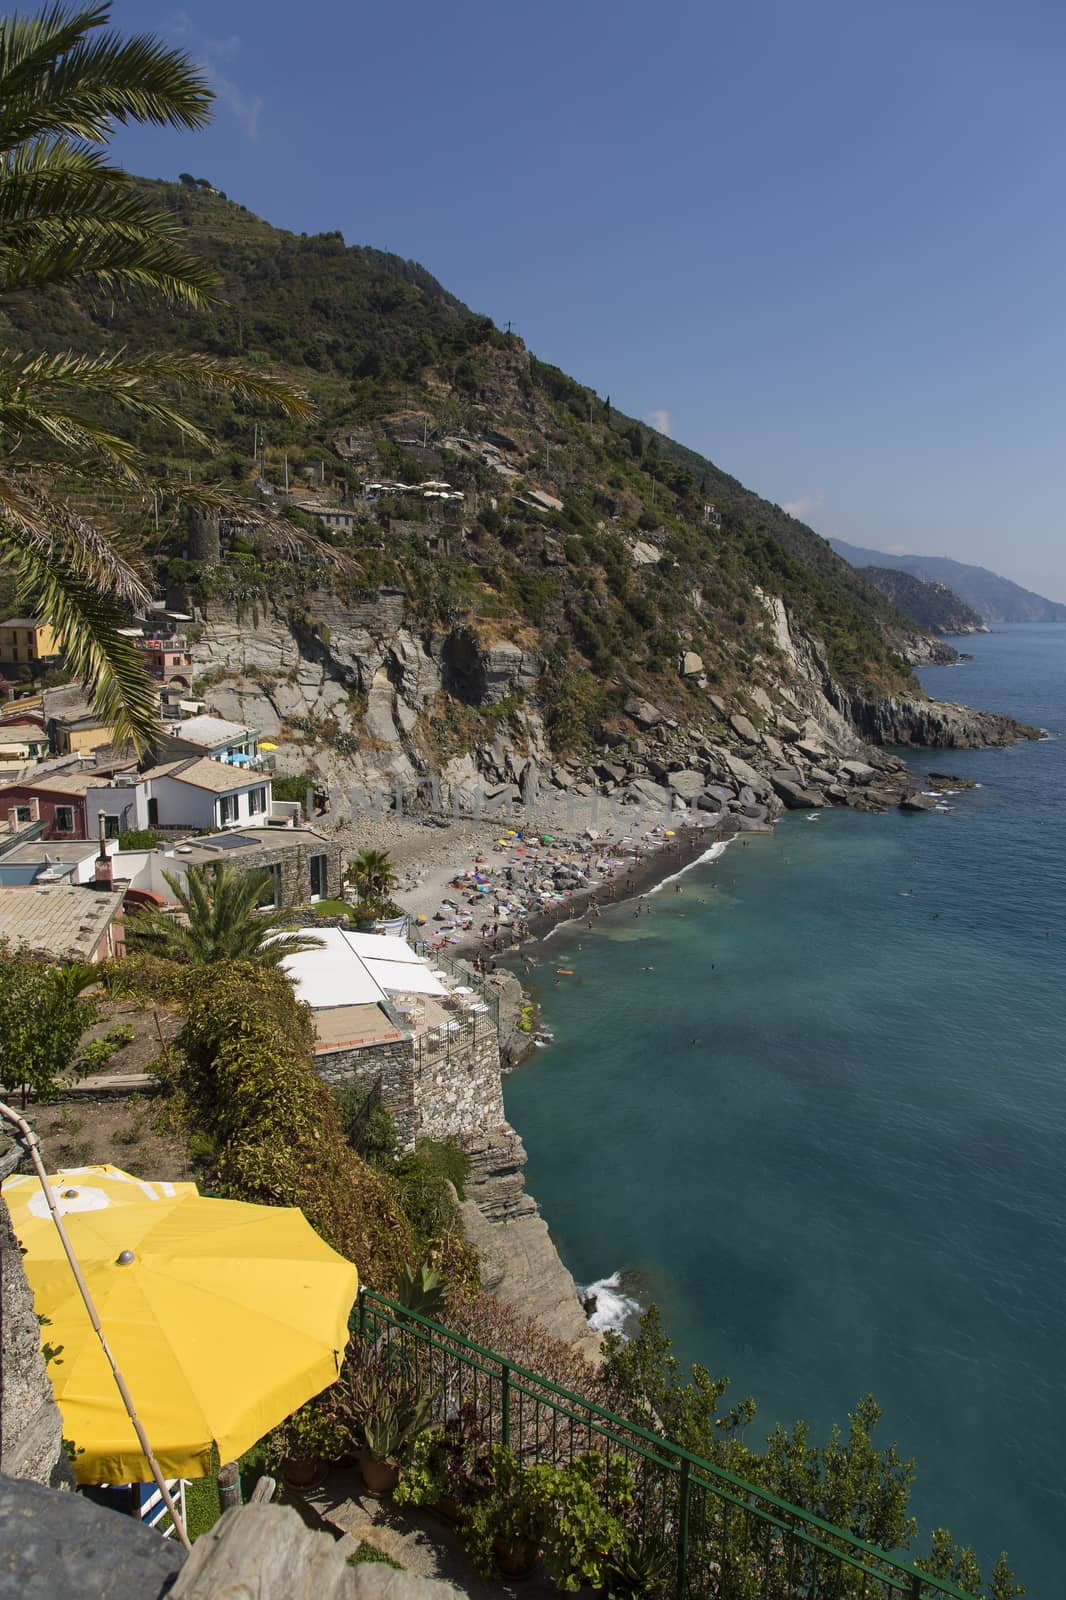 Ligurian bay by nicobernieri